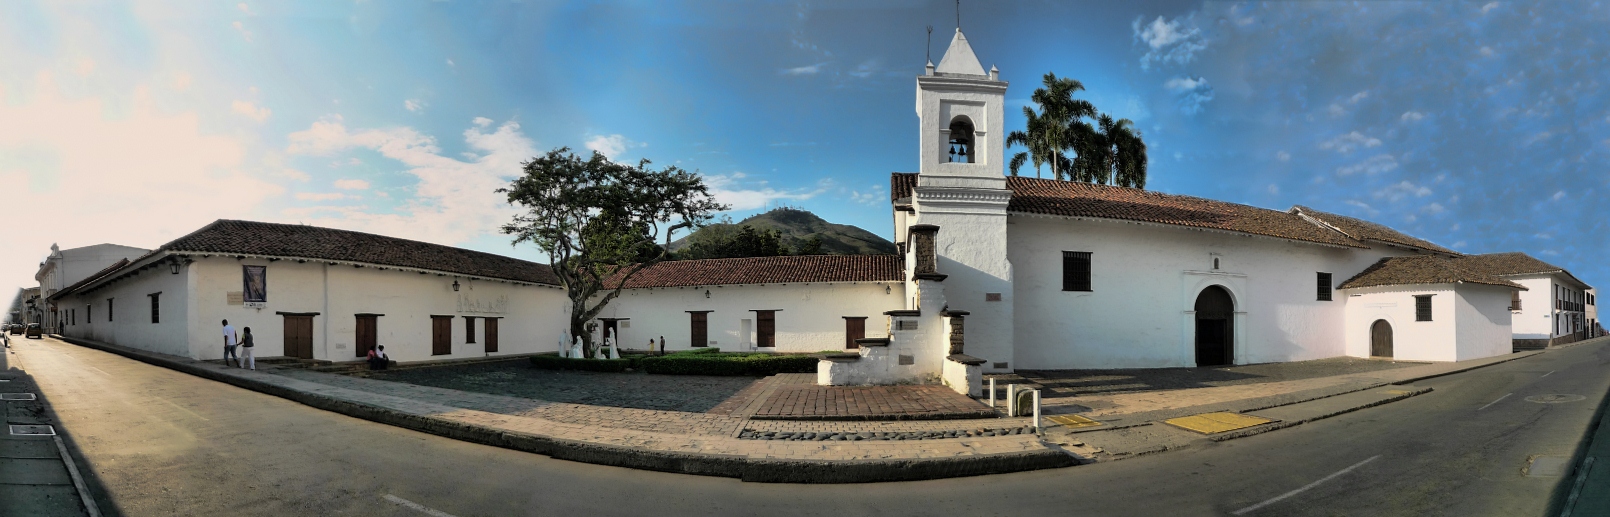 10608-Convento_La_Merced_Valle_del_Cauca_1.JPG